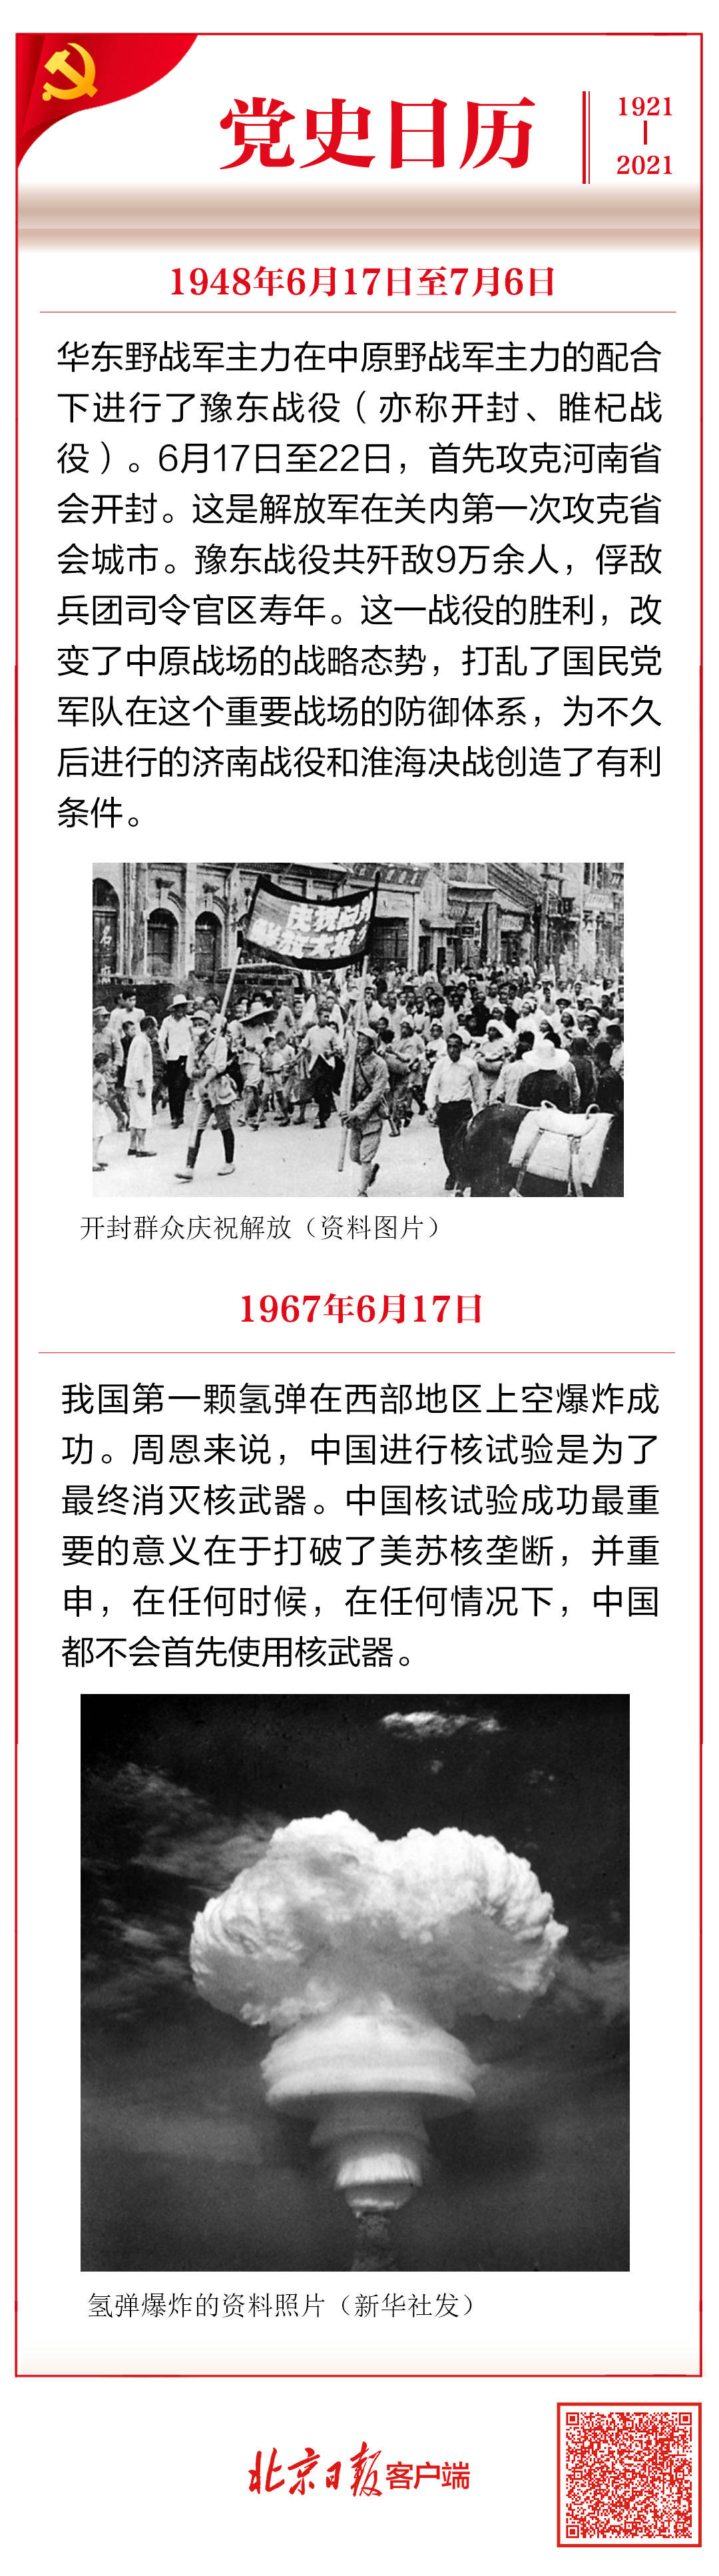 党史日历 6月17日 我国第一颗氢弹爆炸成功 杨萌